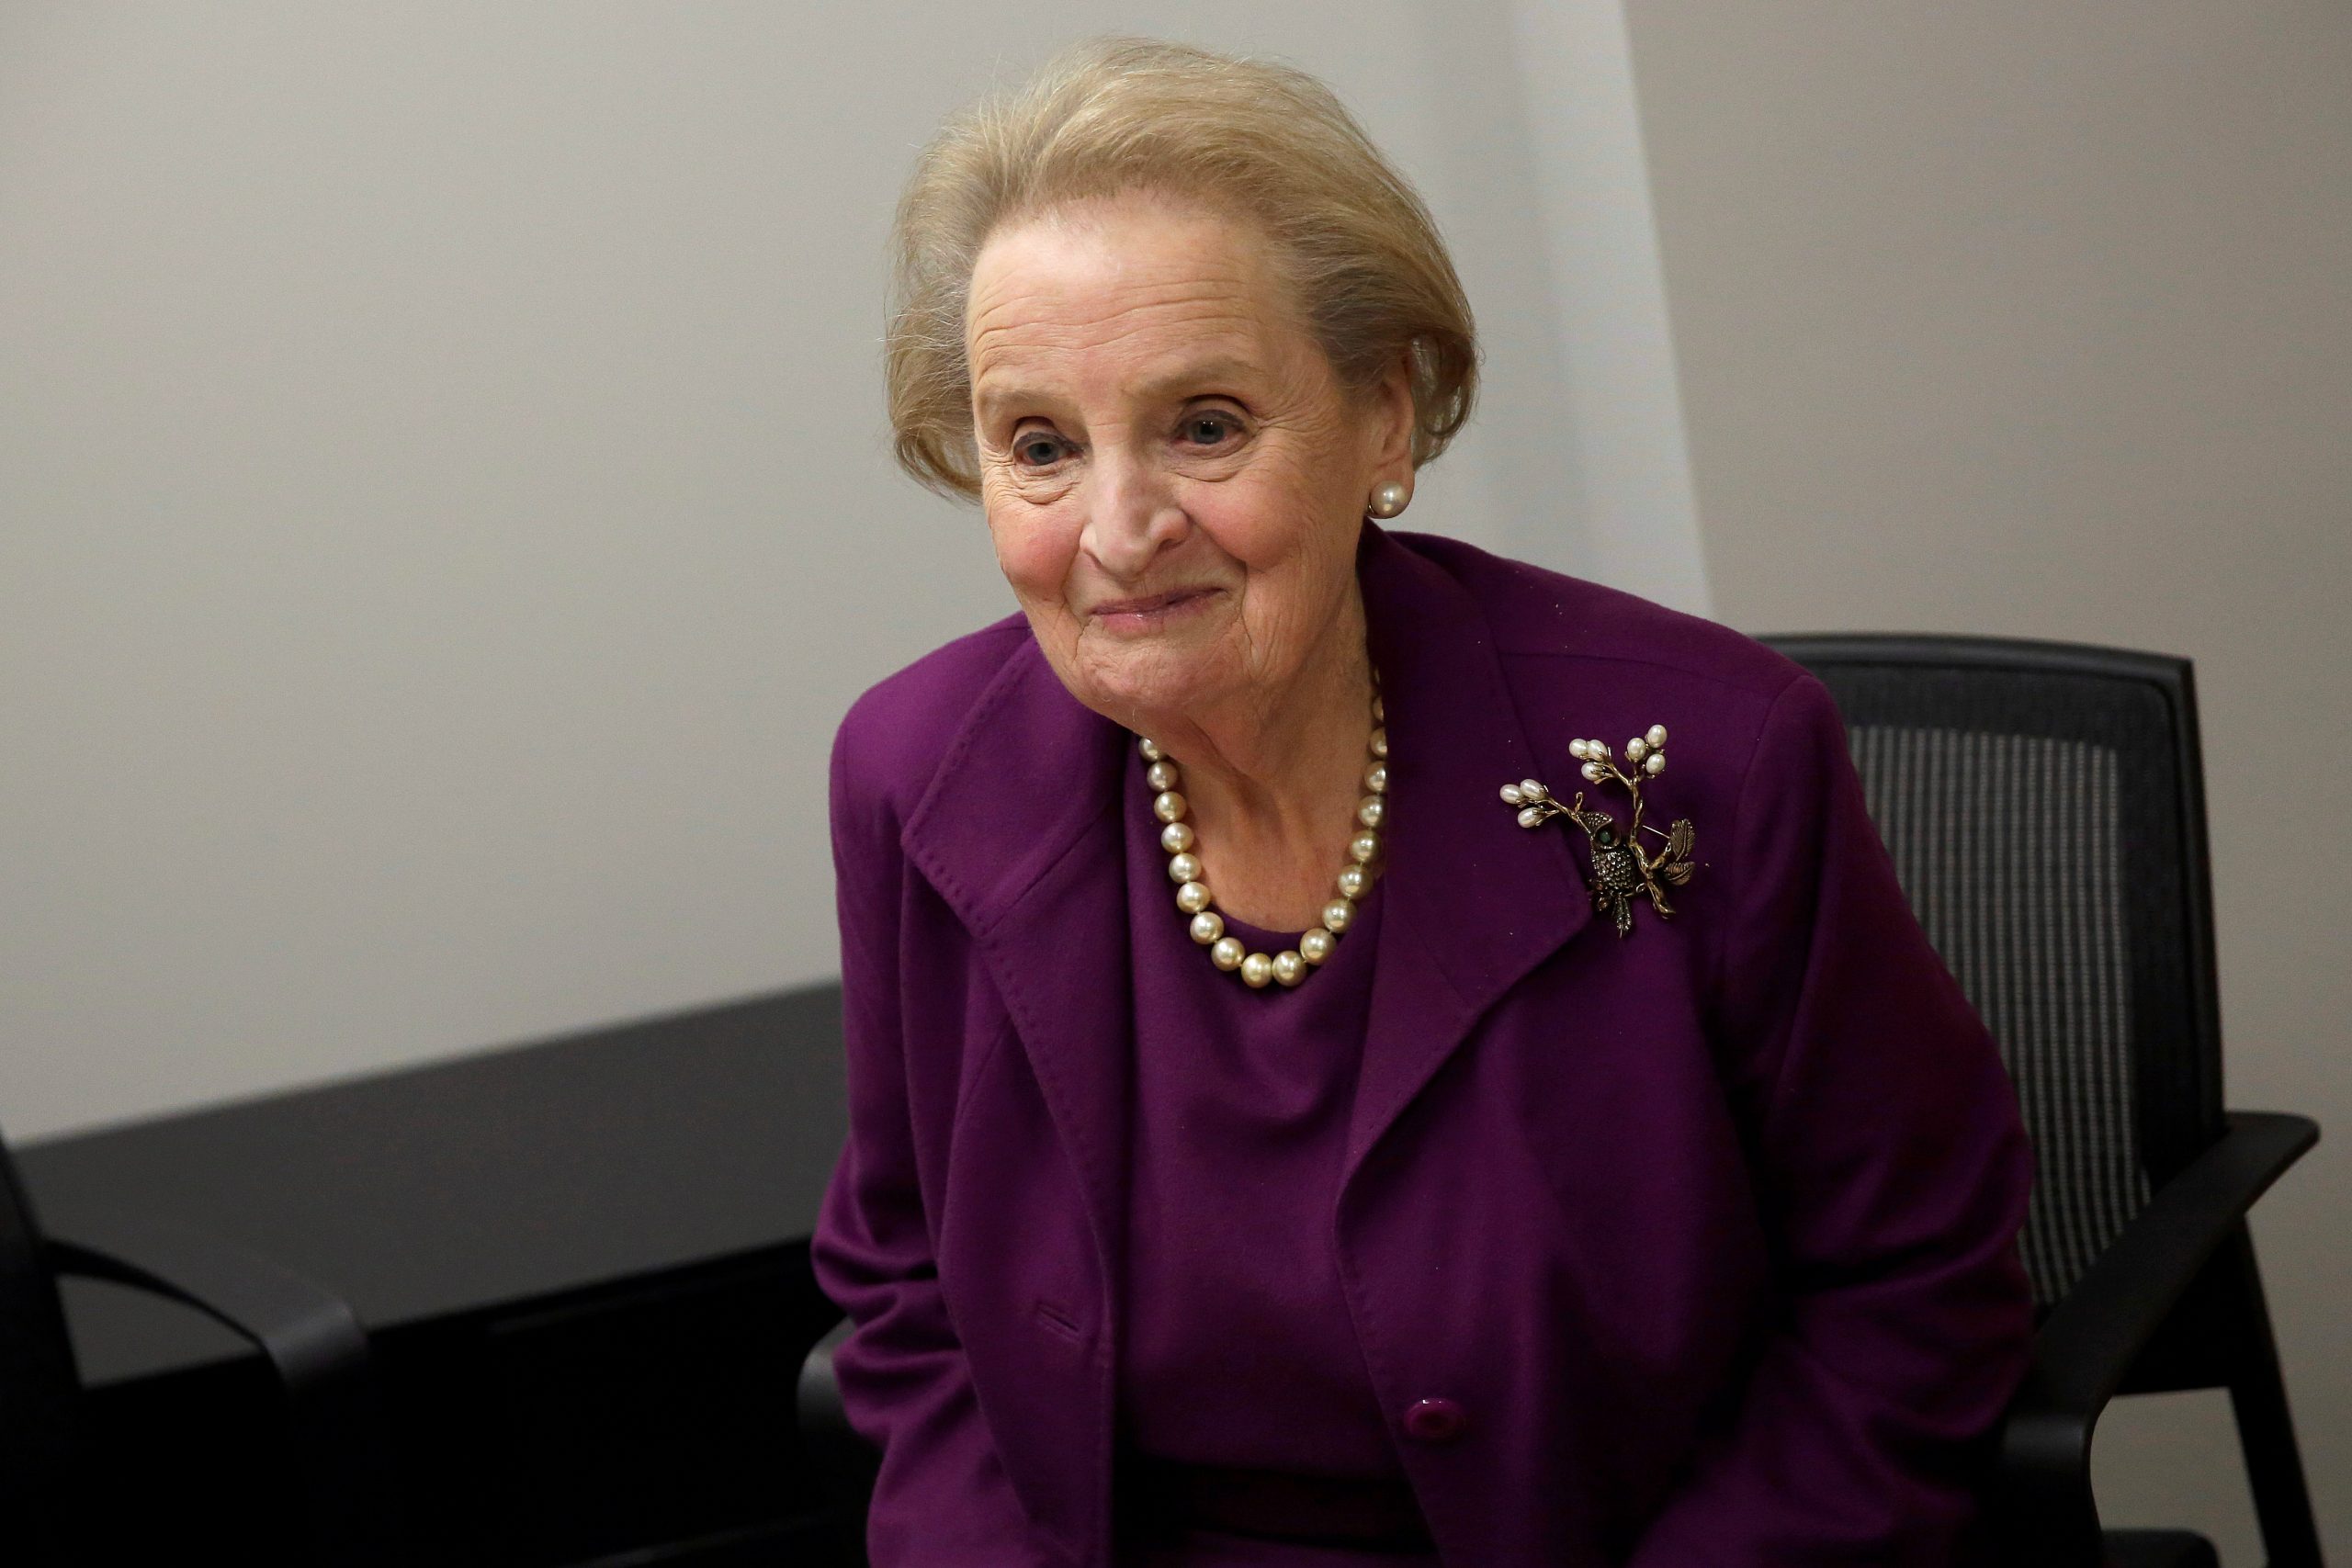 Madeleine Albright Cause Of Death: How Did Madeleine Albright Die?